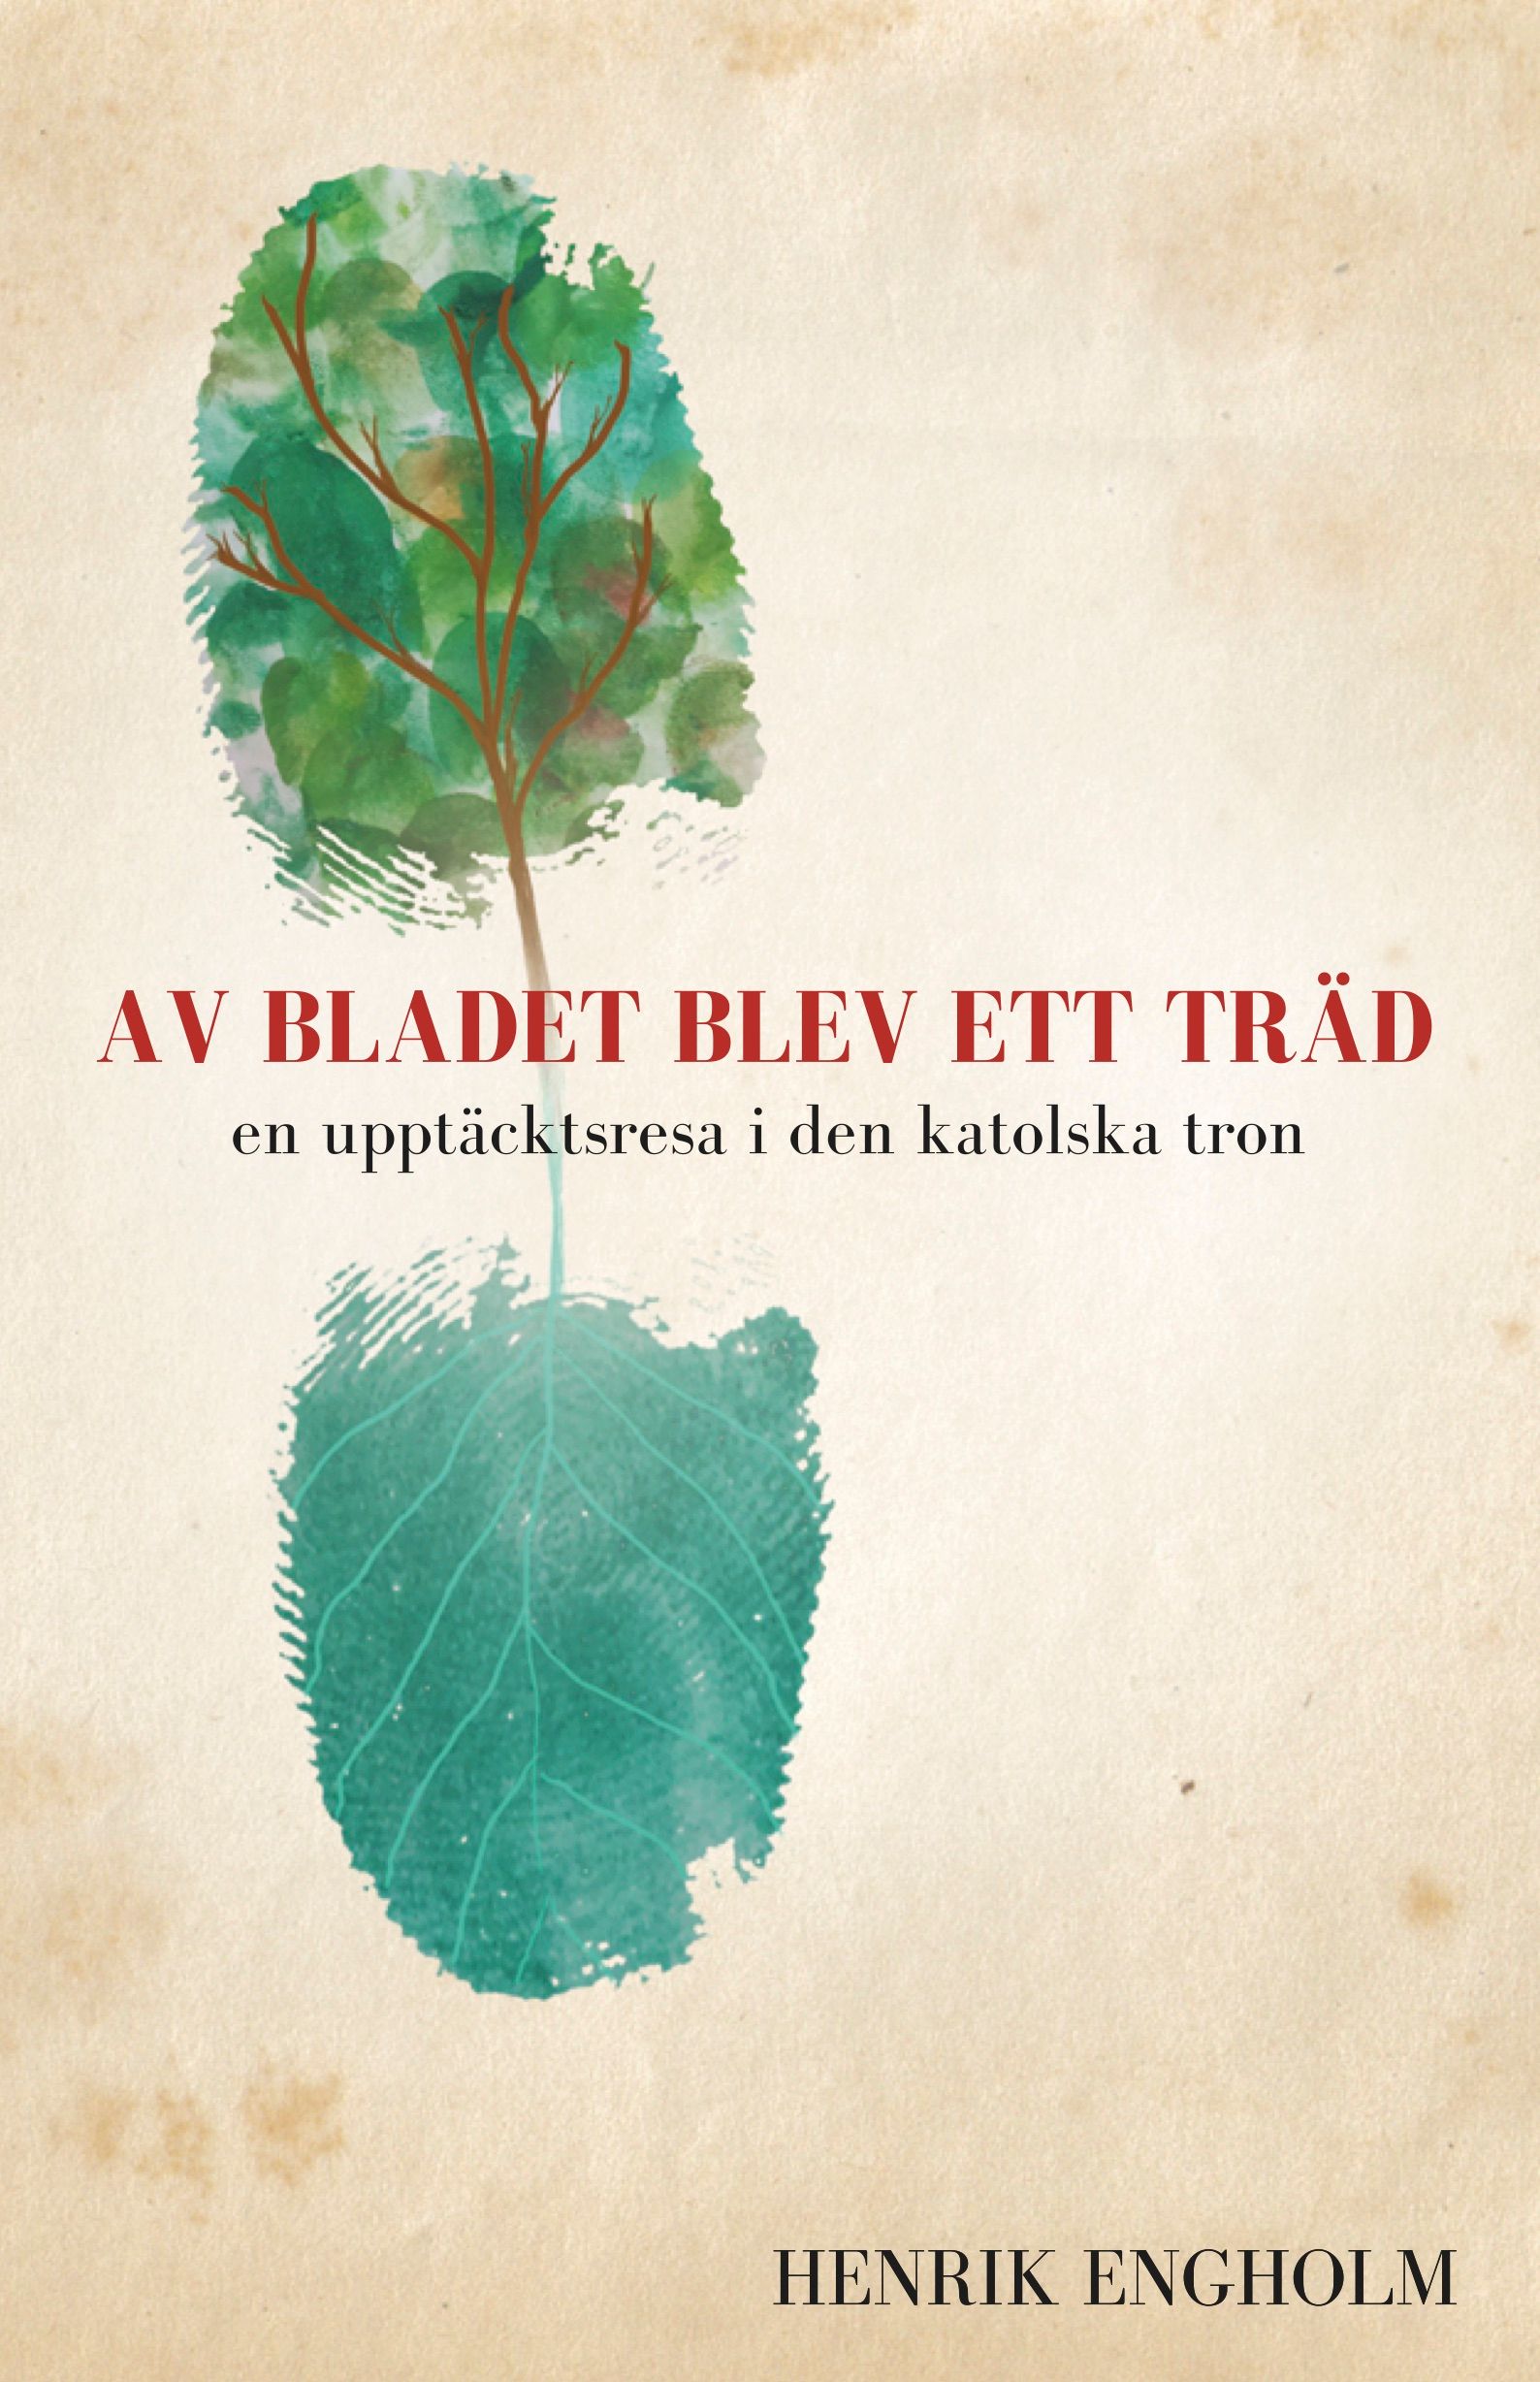 Av bladet blev ett träd, e-bog af Henrik Engholm